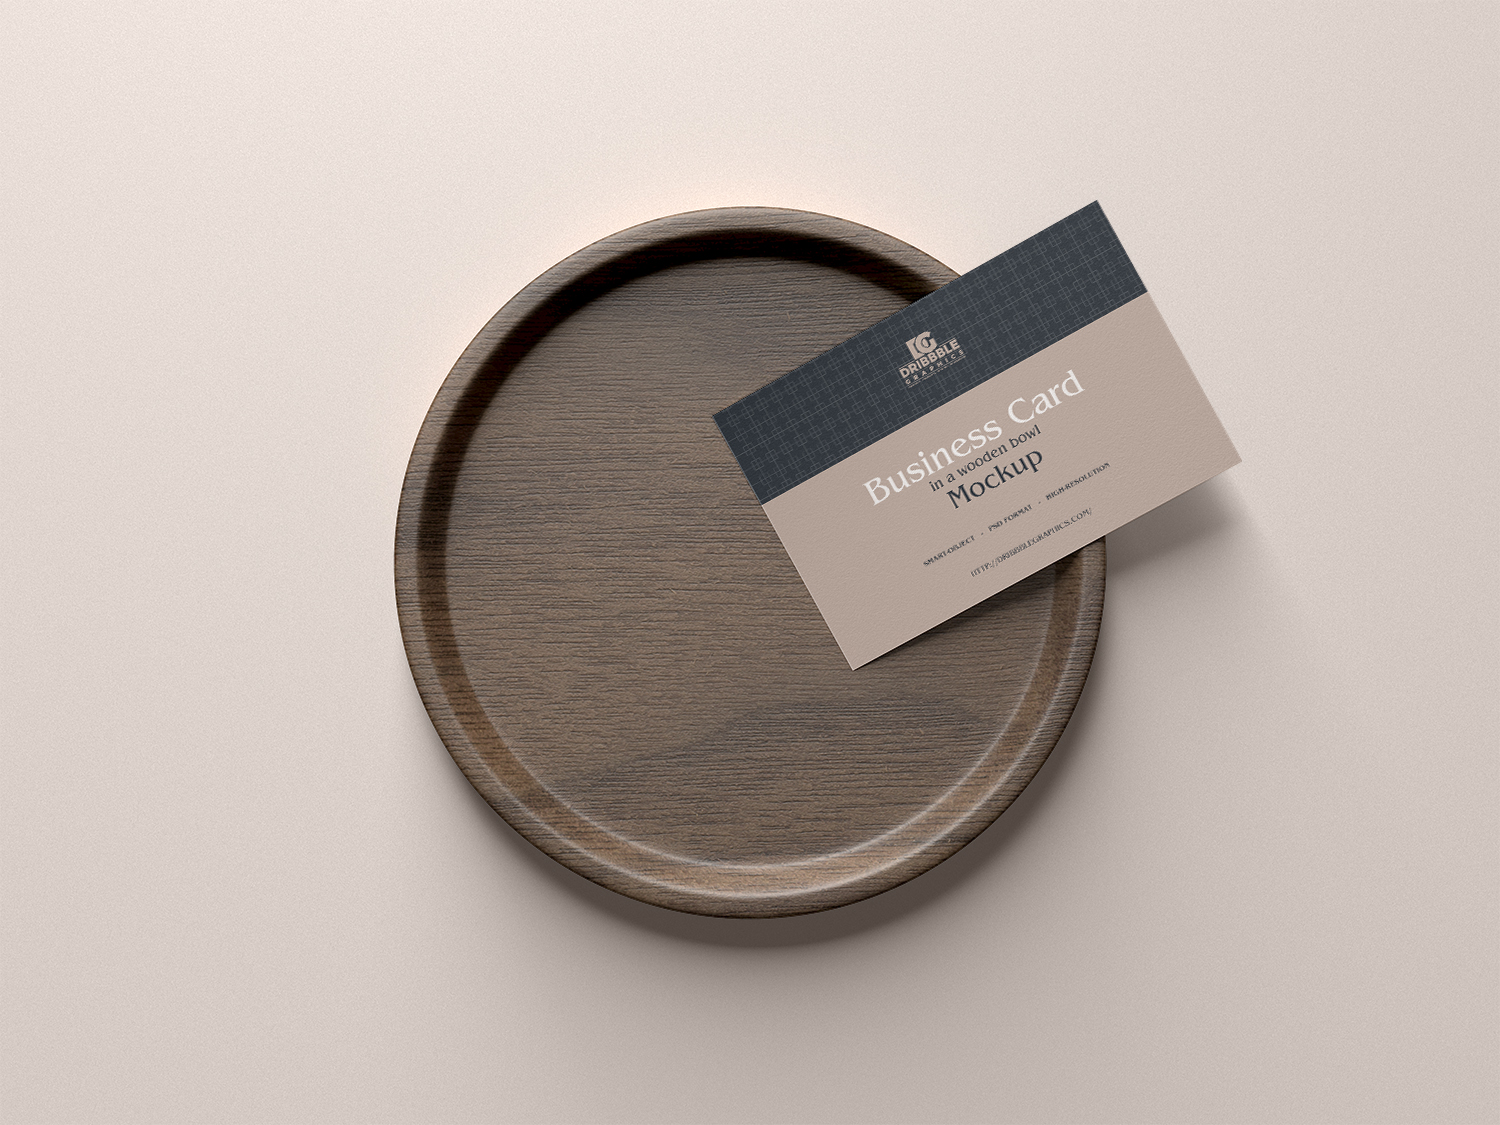 Визитная карточка в макете деревянной чаши